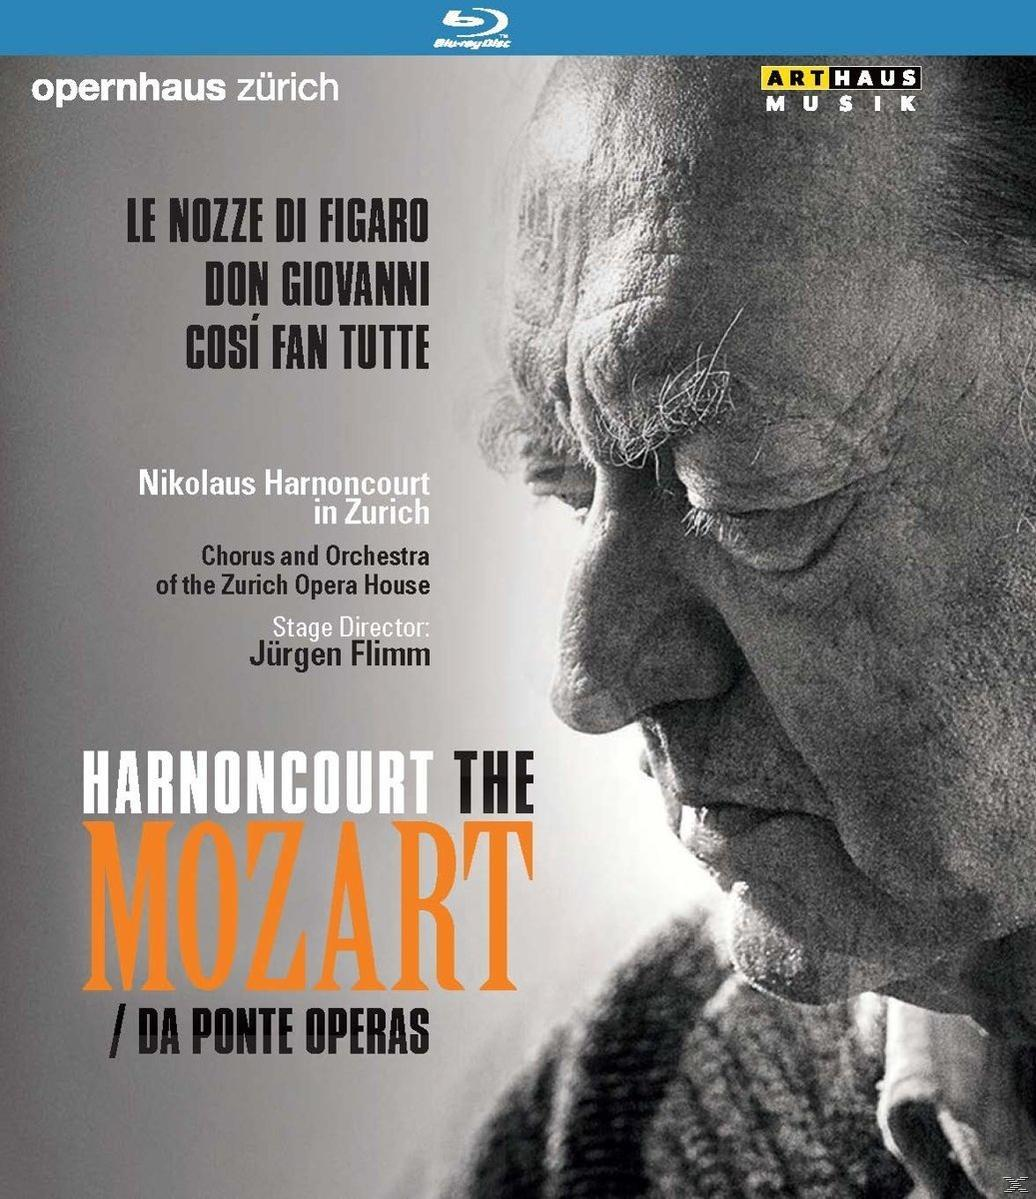 Der Oper Operas - Ponte Mozart: Und Da (Blu-ray) - Chor Zürich Orchester